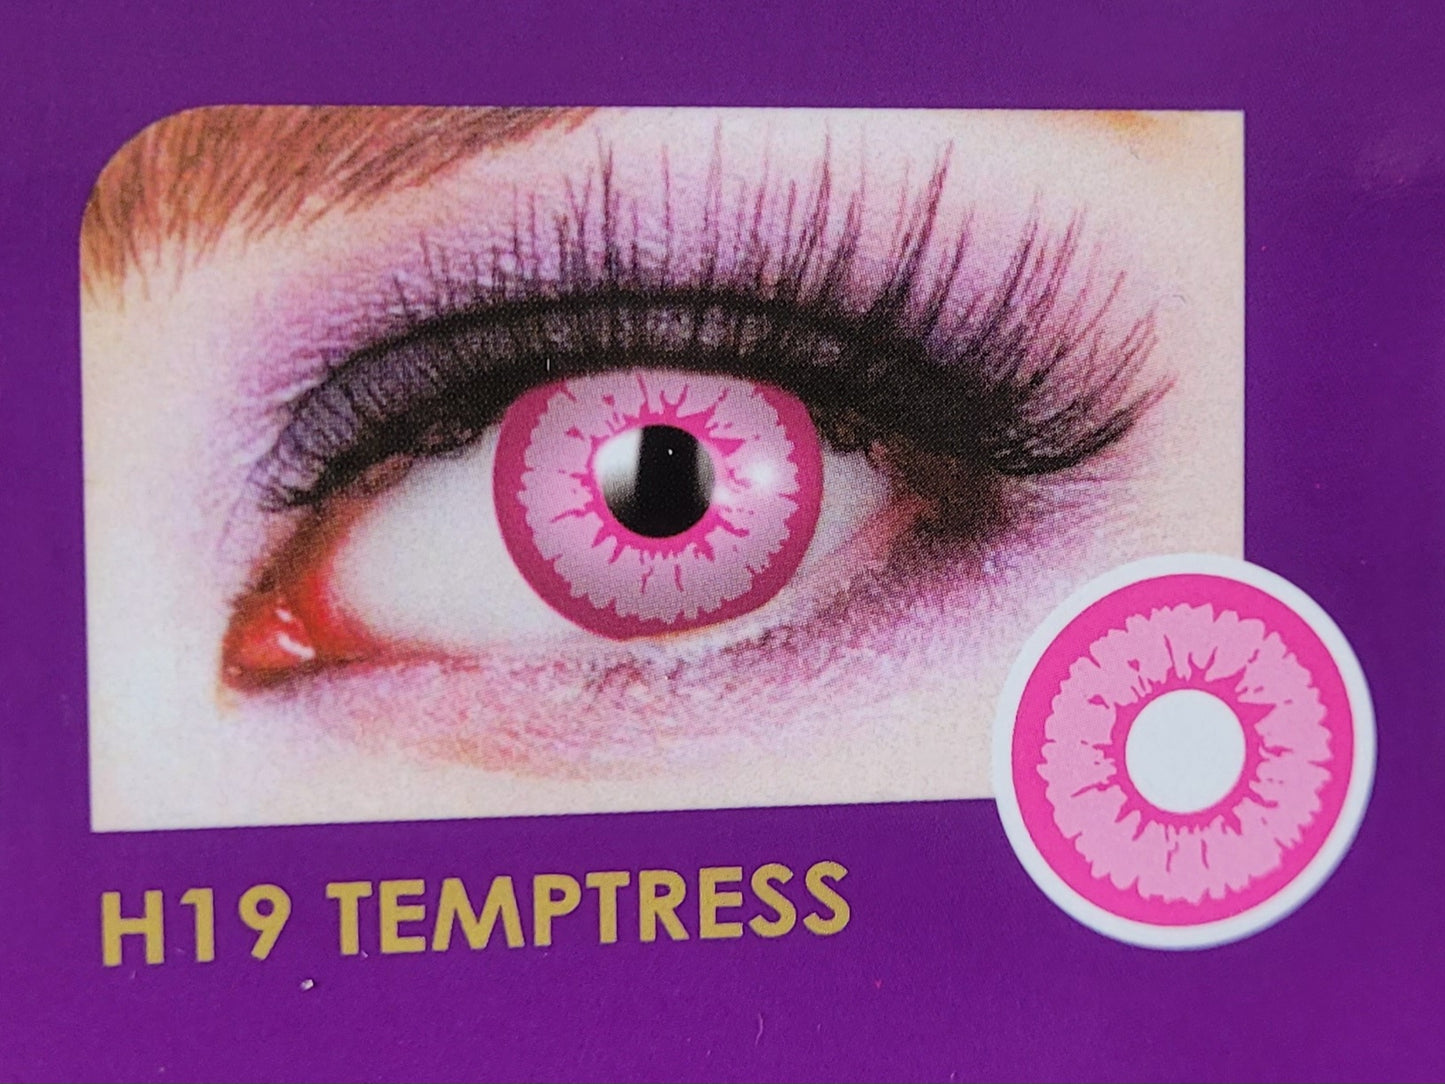 Temptress Contacts